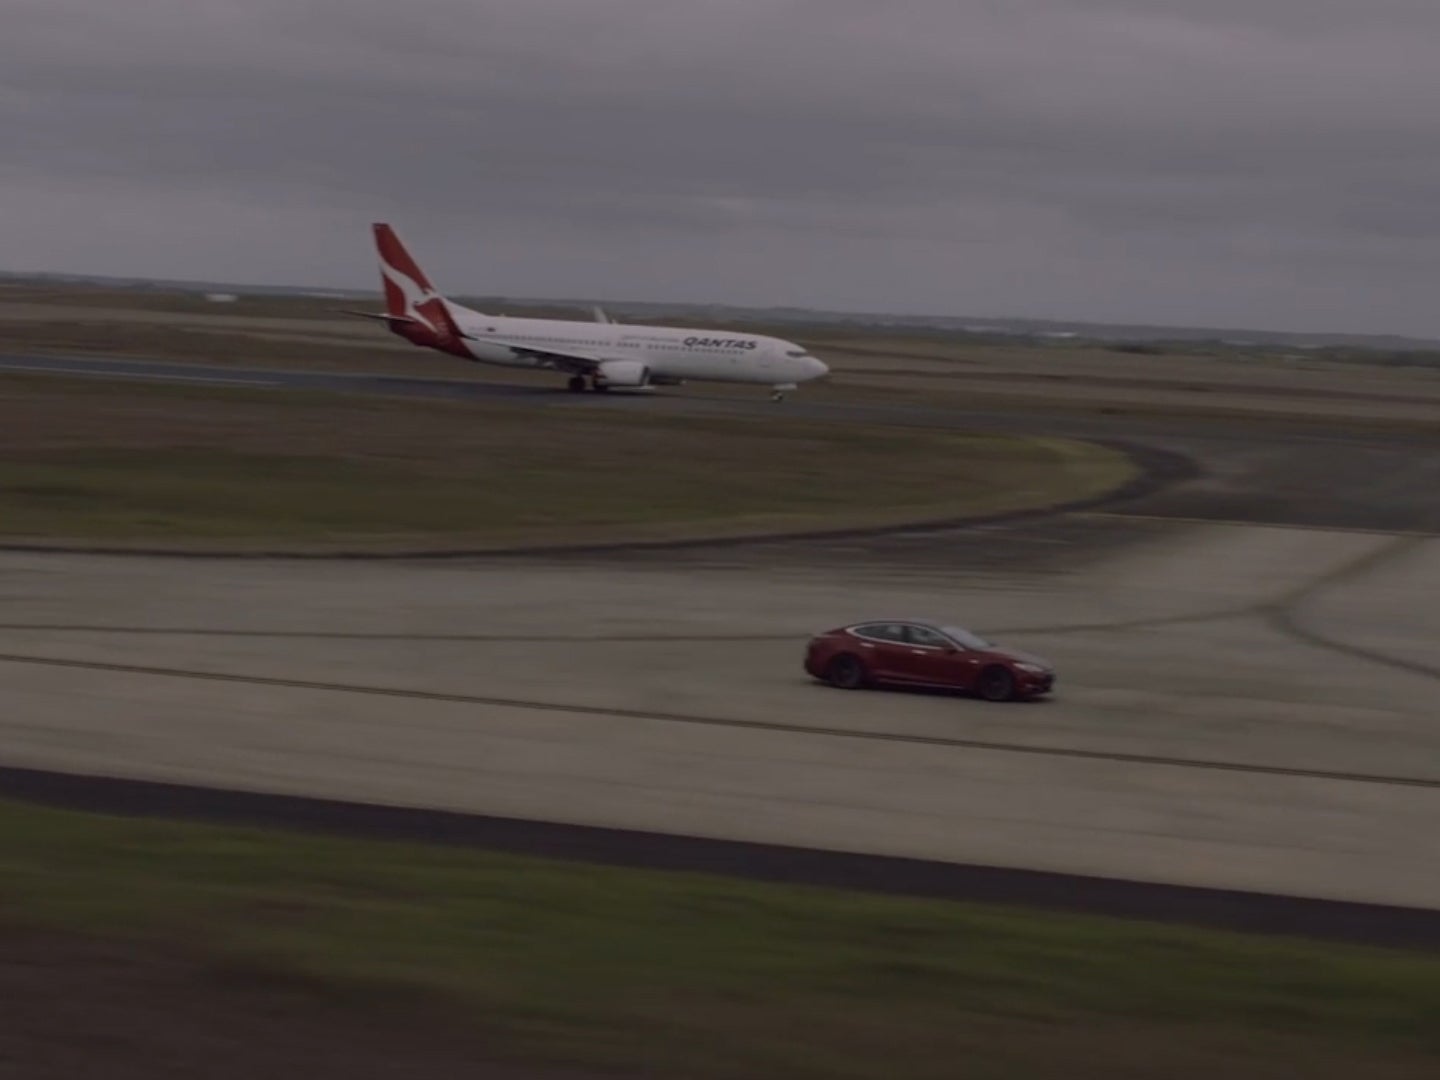 Tesla Model S races a Qantas passenger jet in an instant ‘Plane vs Car’ classic